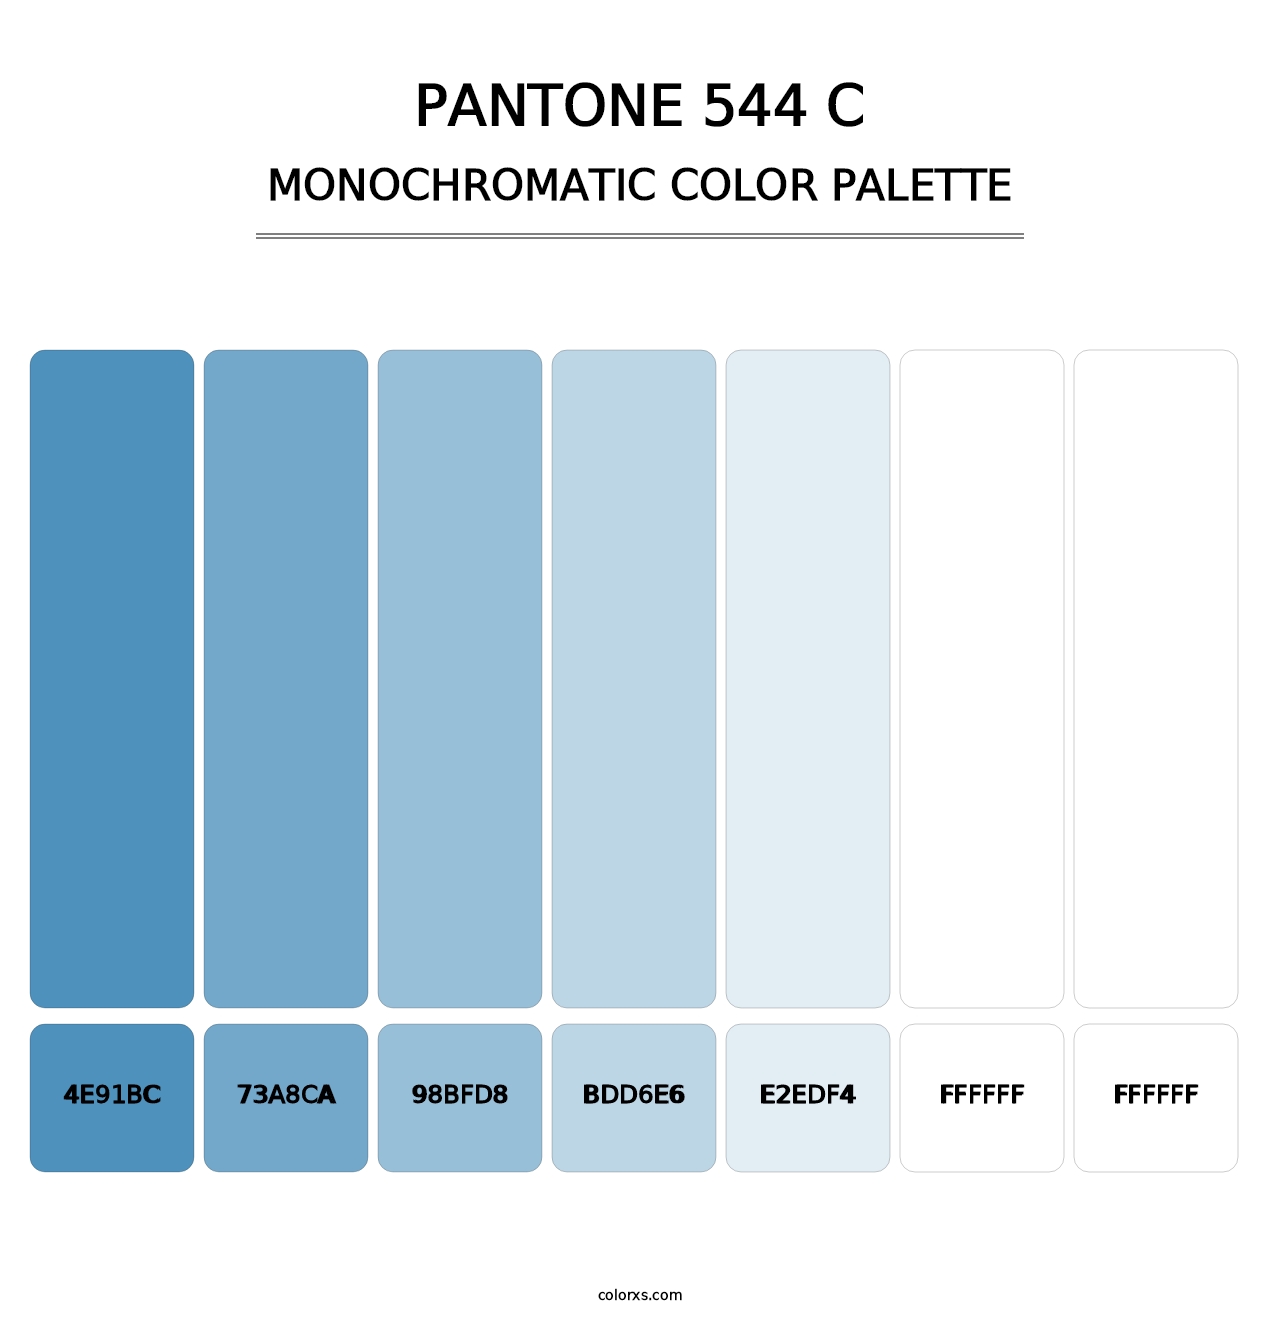 PANTONE 544 C - Monochromatic Color Palette